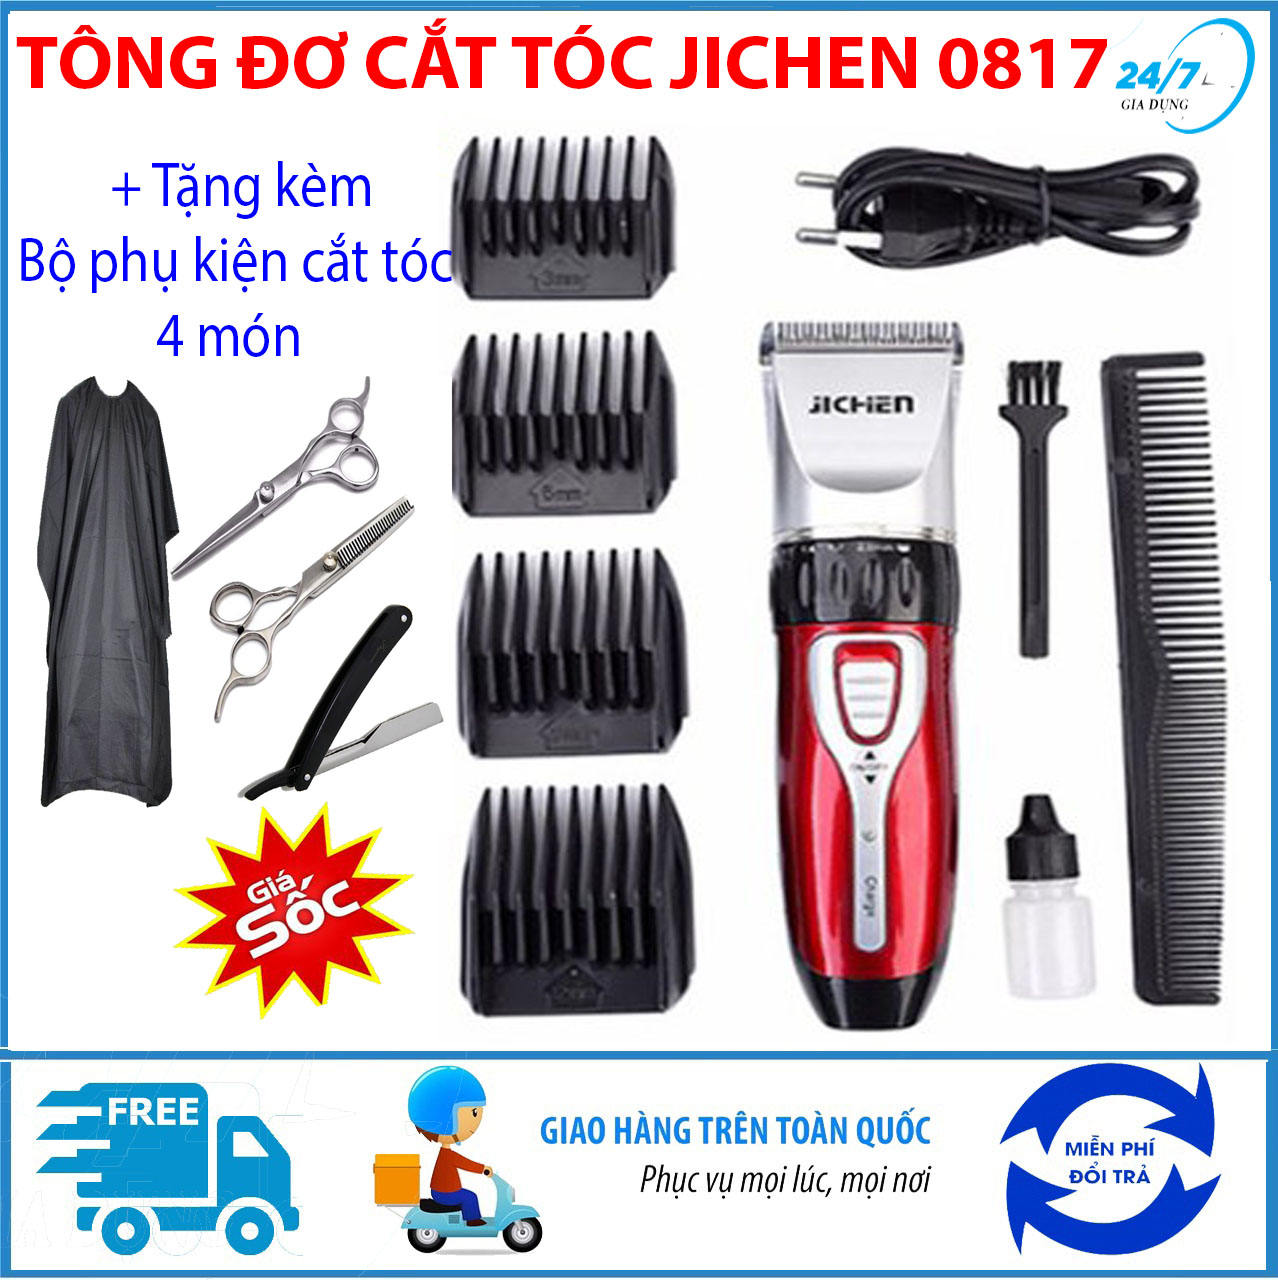 tang-bo-phu-kien-cat-toc-4-mon-tong-do-cat-toc-tre-em-jichen-0817-tong-do-cat-toc-chuyen-nghiepkhong-day-may-cat-toc-da-nang-tang-do-hot-toc-cho-be-an-toan-tien-loi-i1345007339-s5529914636.html-2